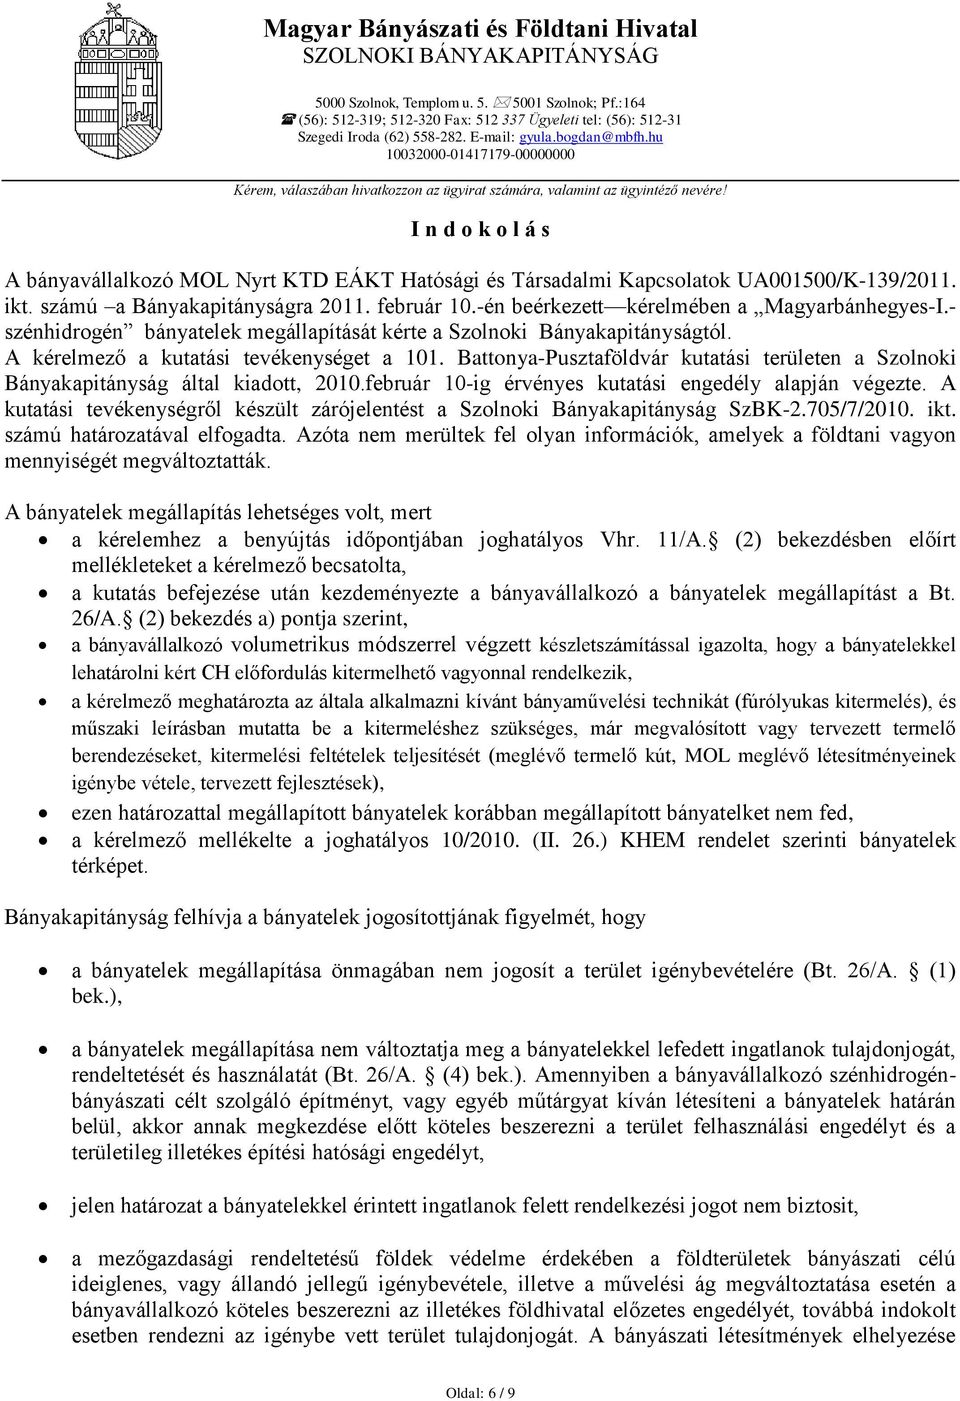 számú a Bányakapitányságra 2011. február 10.-én beérkezett kérelmében a Magyarbánhegyes-I.- szénhidrogén bányatelek megállapítását kérte a Szolnoki Bányakapitányságtól.